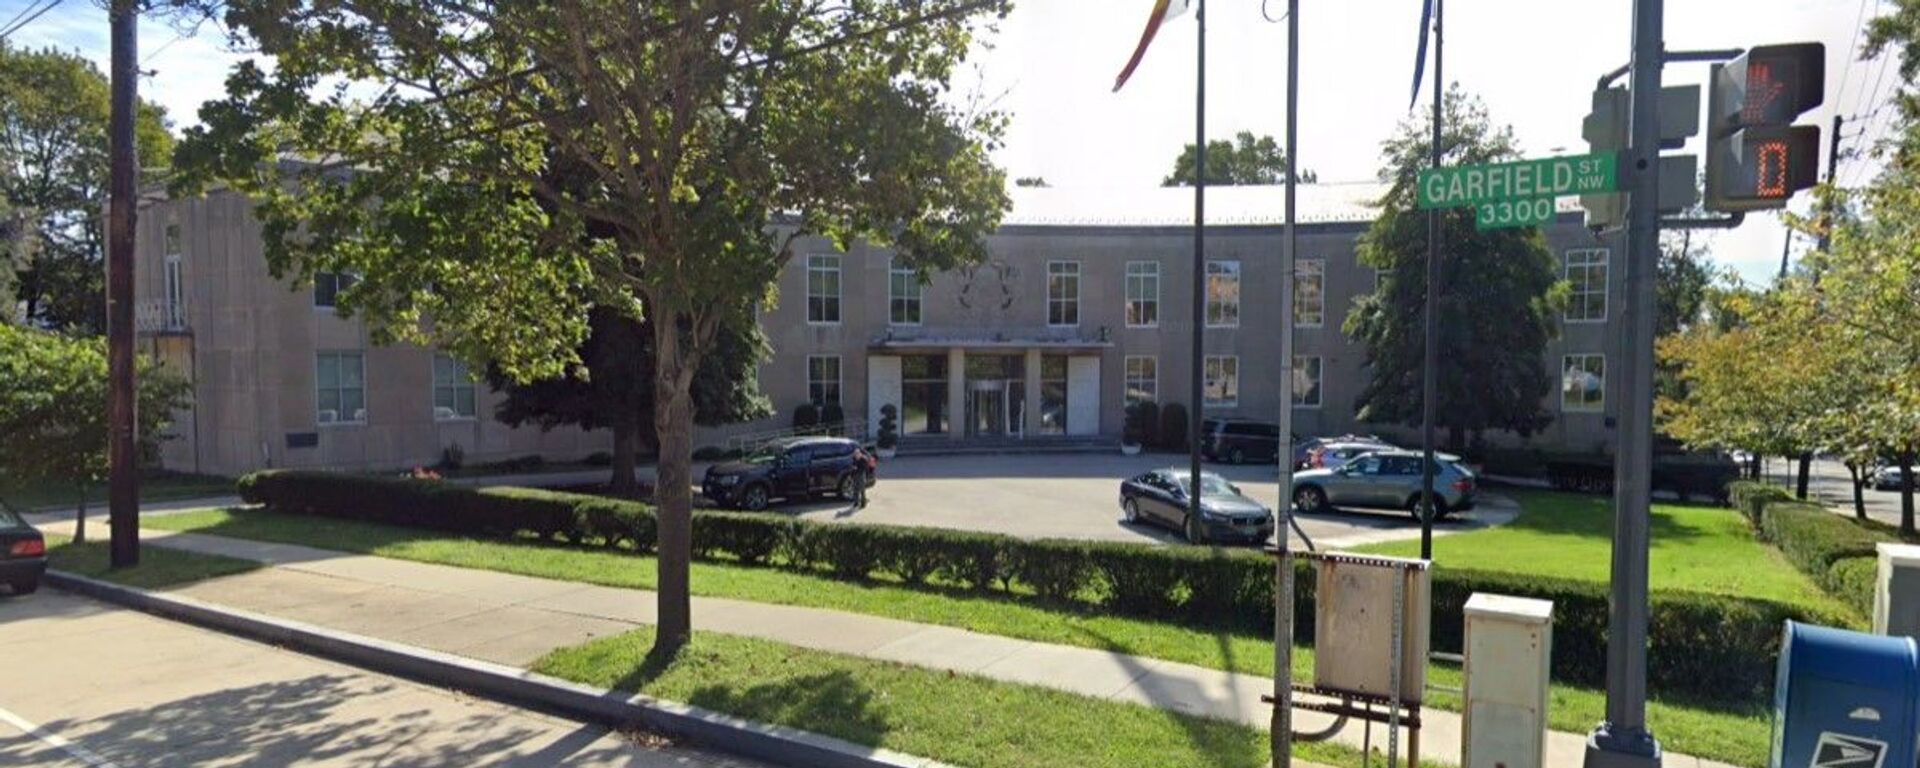 Việt Nam  mua khu đất tọa lạc tại số 3330, phố Garfield, NW, Washington, DC 20008, Hoa Kỳ để xây tòa Đại sứ quán mới ở Mỹ - Sputnik Việt Nam, 1920, 15.02.2022